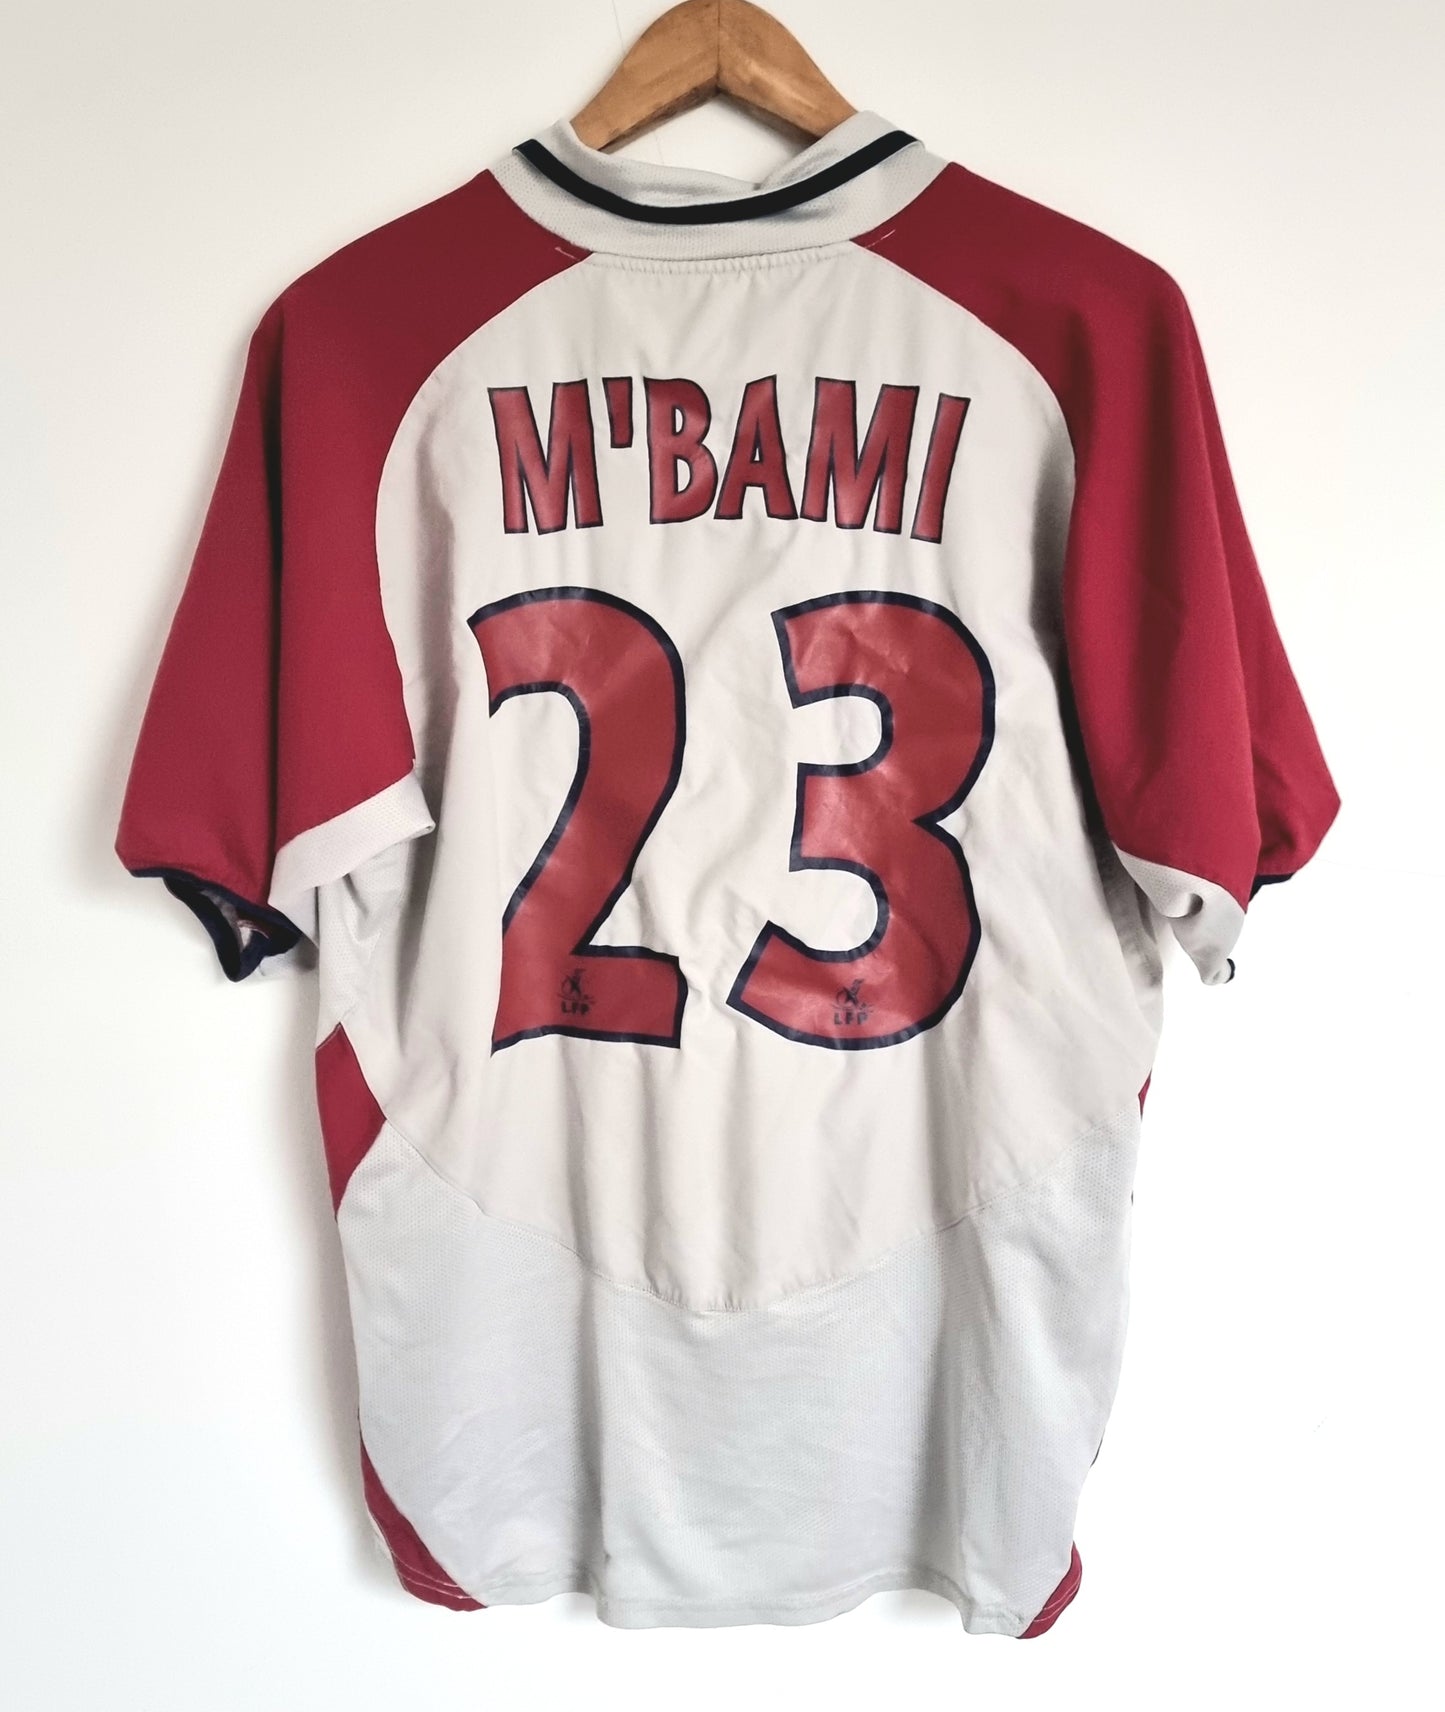 Nike PSG 03/04 'M'Bami 23' Away Shirt Large